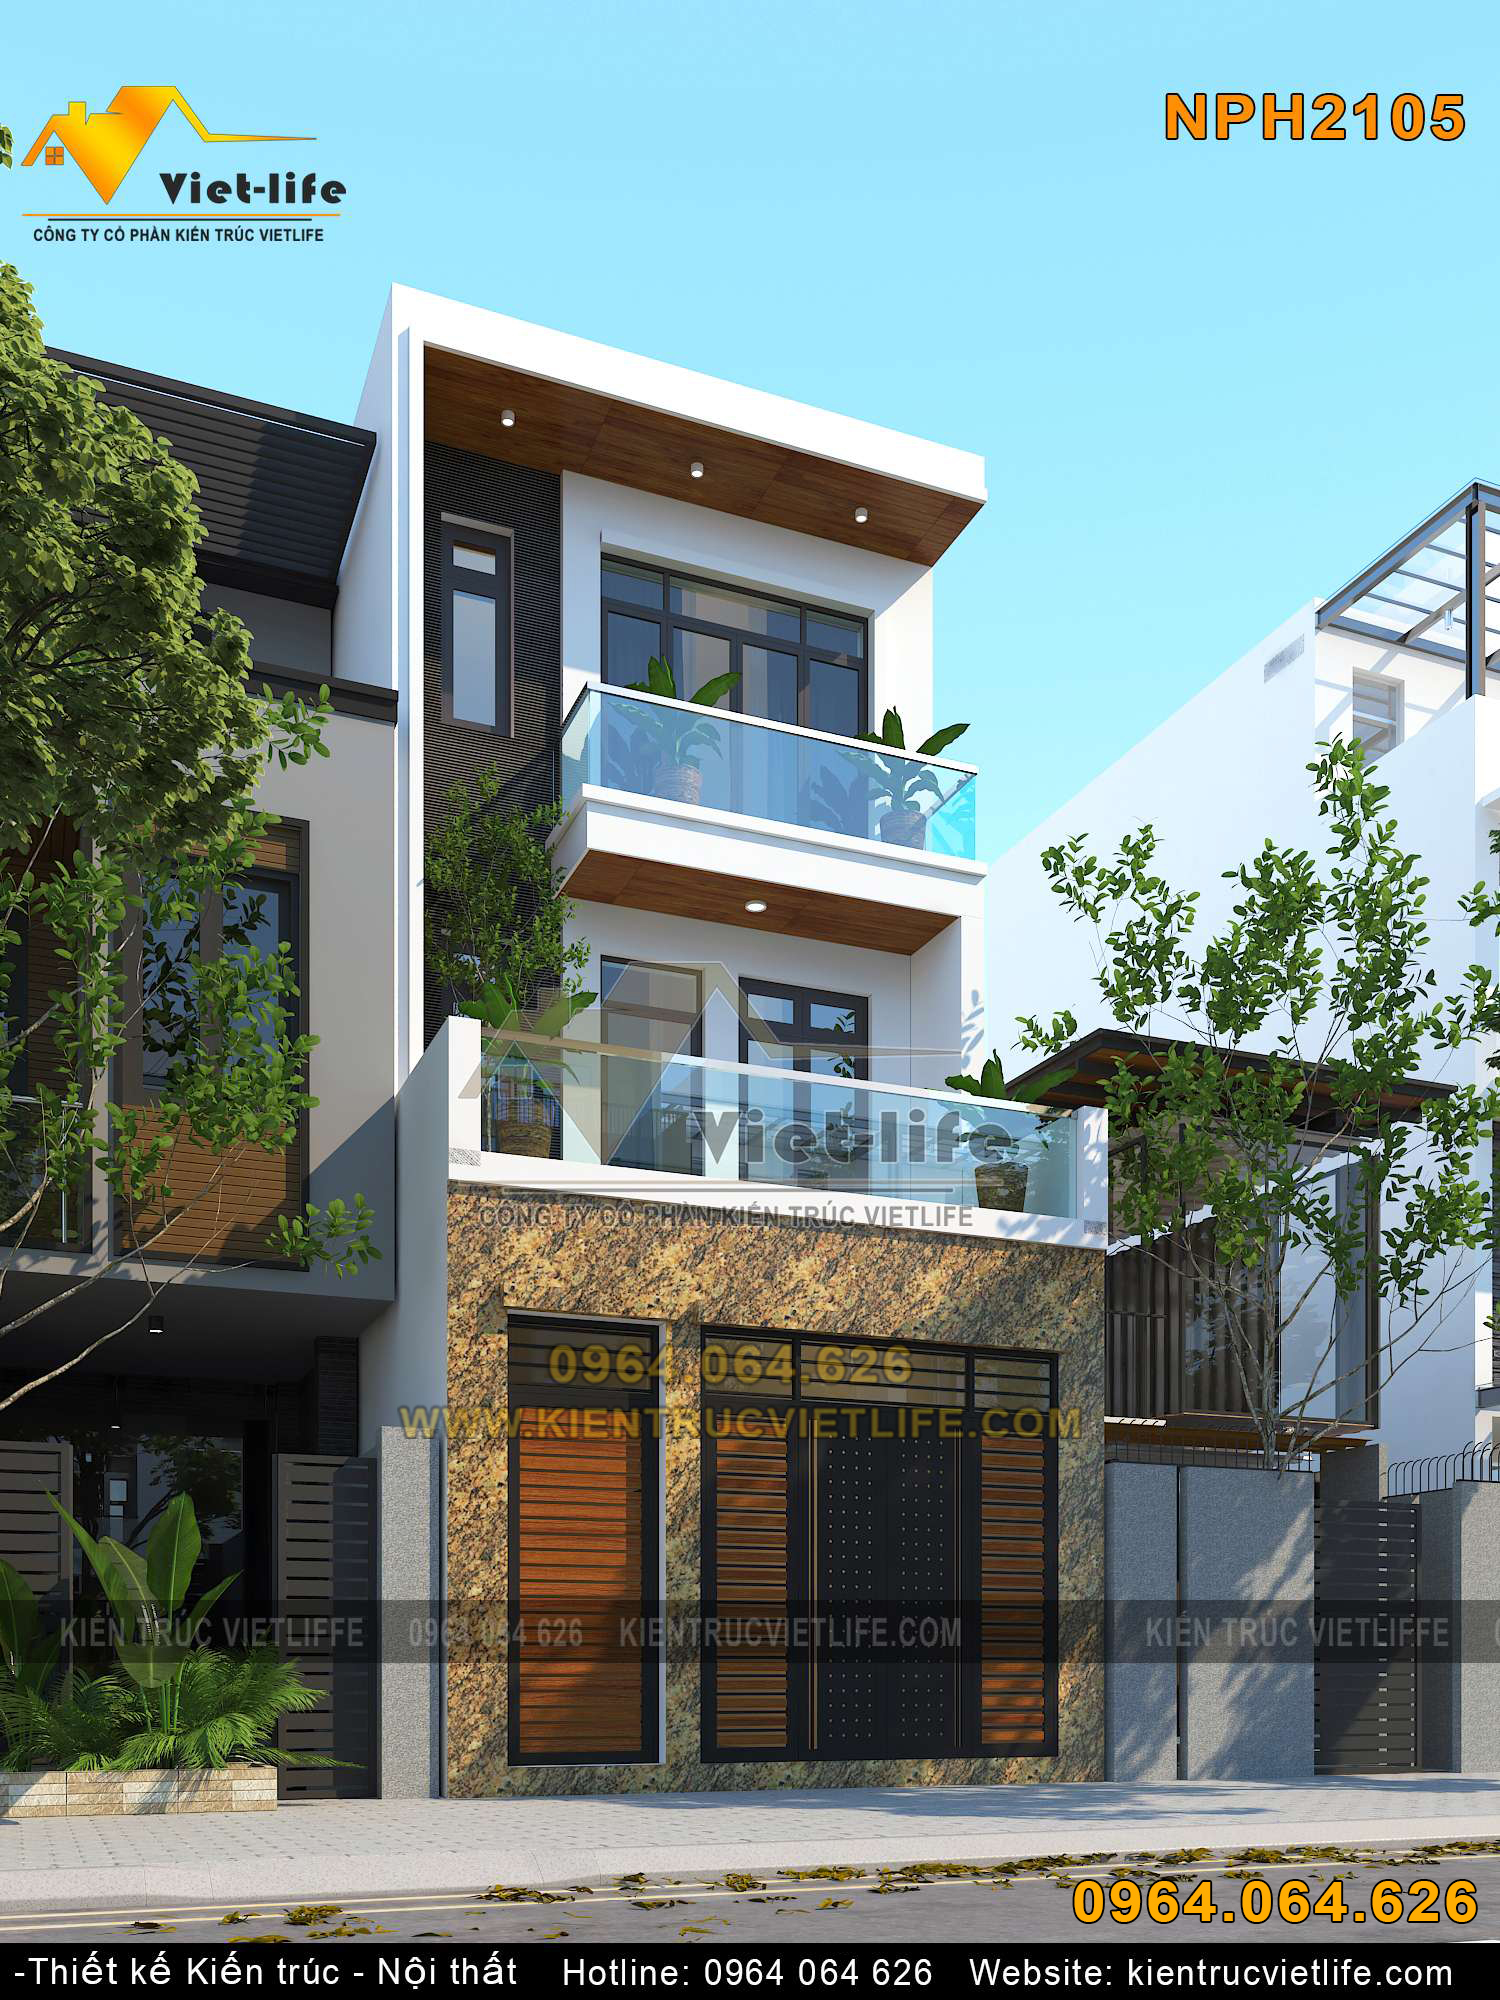 Gợi ý mẫu nhà 3 tầng 2 mặt tiền hiện đại, đẹp 2023 - Kiến Thiết Việt